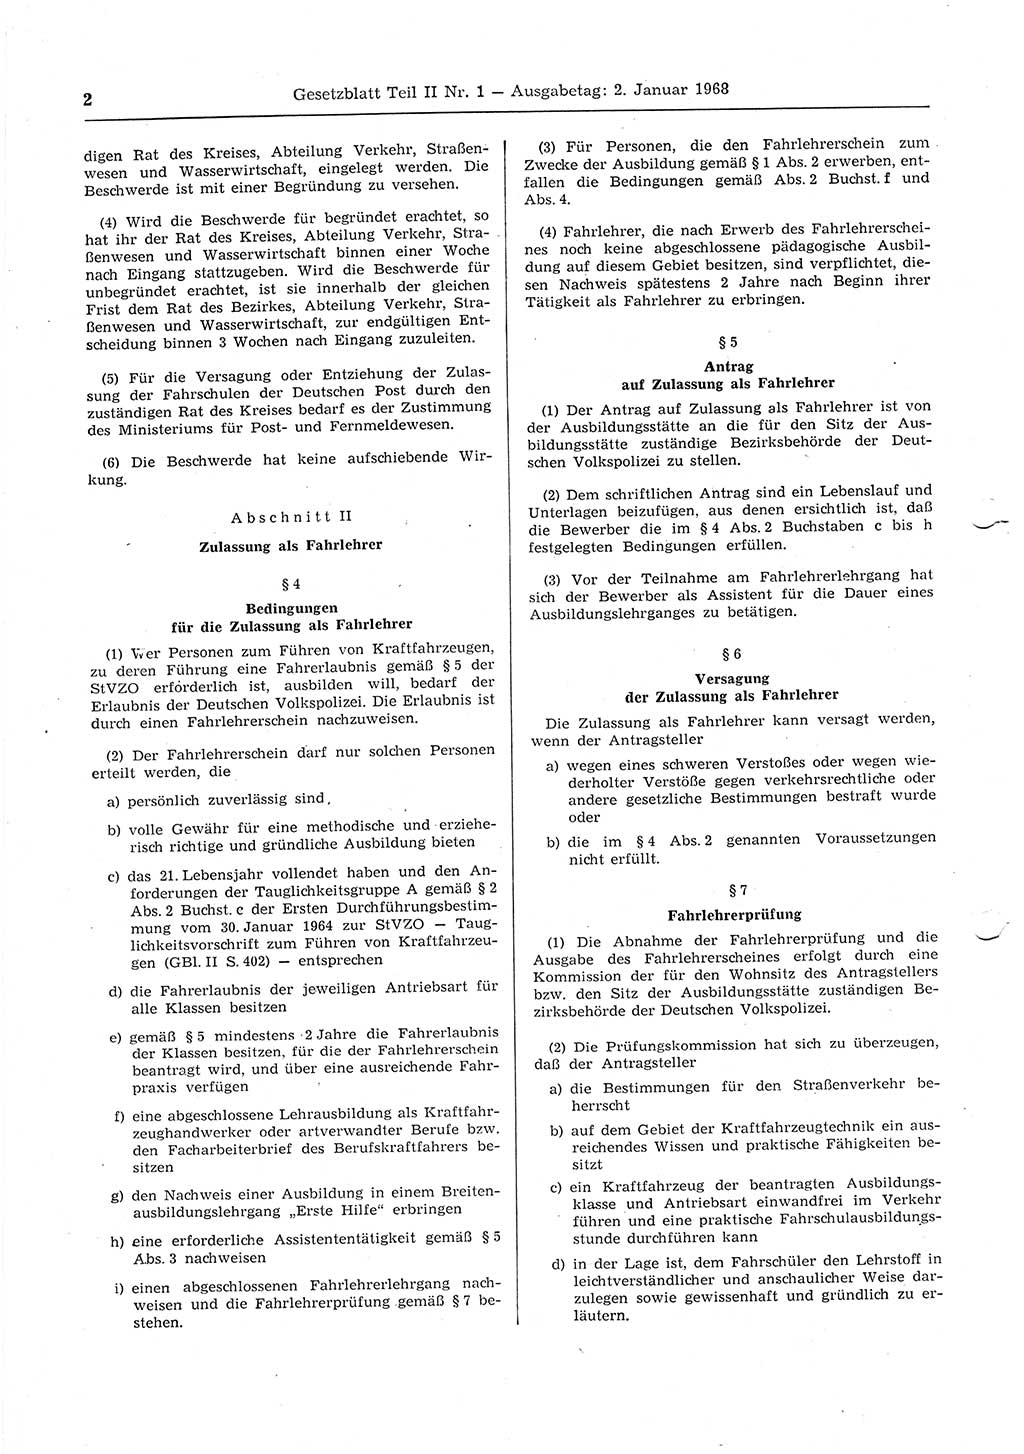 Gesetzblatt (GBl.) der Deutschen Demokratischen Republik (DDR) Teil ⅠⅠ 1968, Seite 2 (GBl. DDR ⅠⅠ 1968, S. 2)